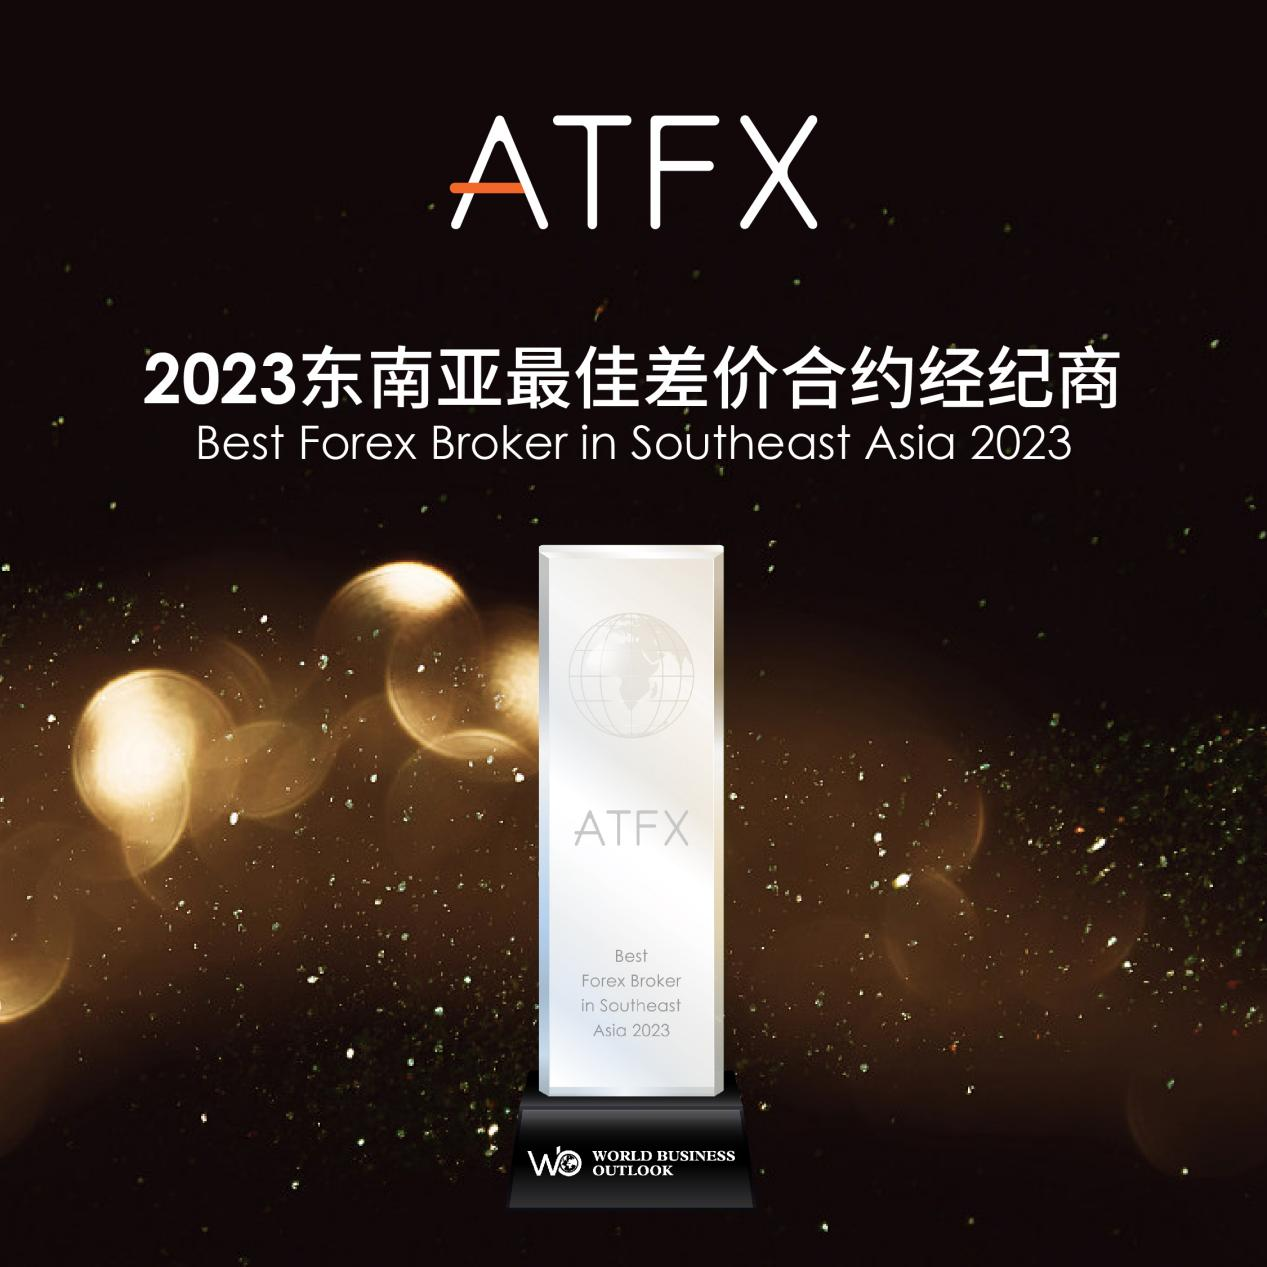 创新与荣誉同行：ATFX凭借卓越服务与产品，再次荣膺东南亚最佳差价合约经纪商